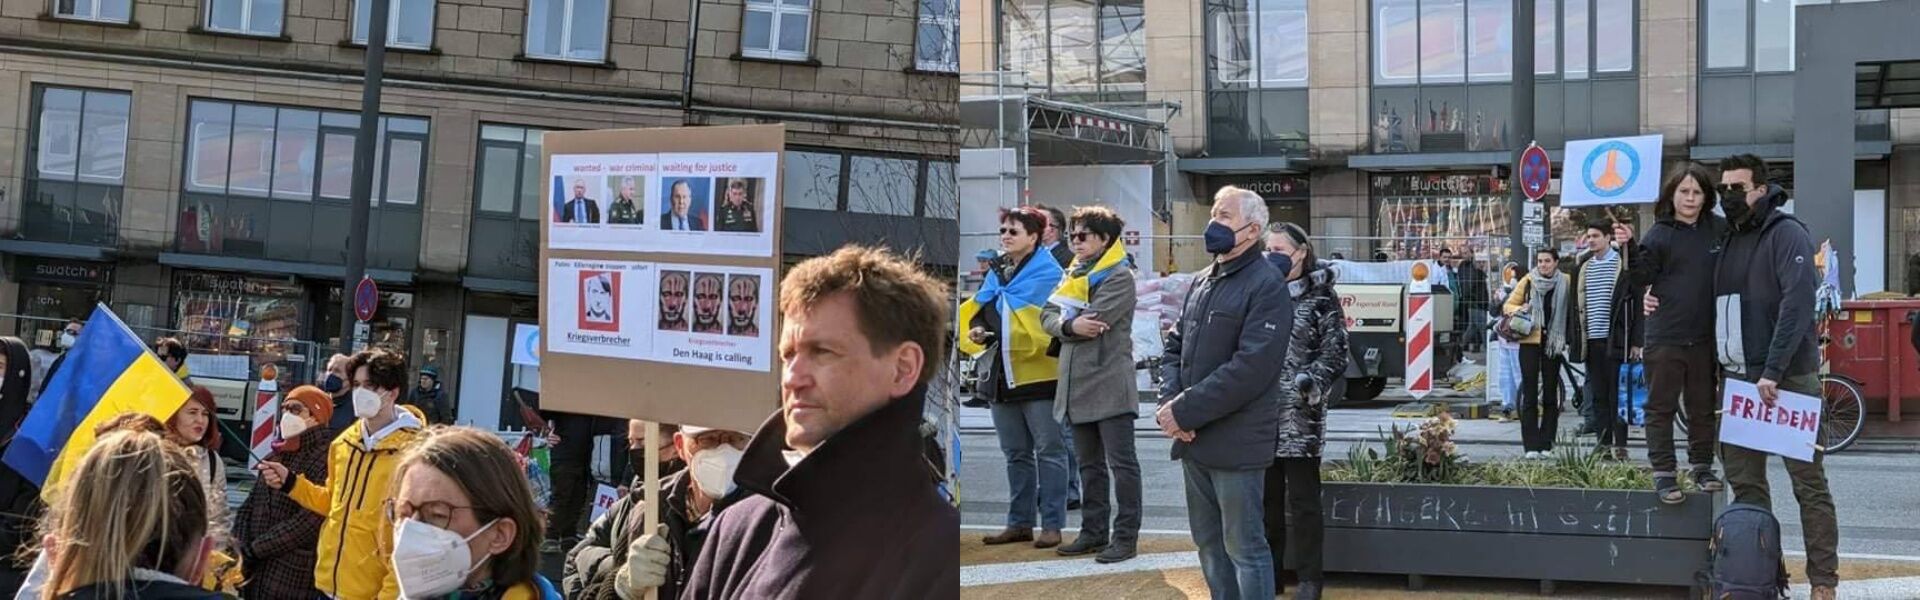 В Гамбурге на акцию в поддержку Украины вышли несколько тысяч человек.